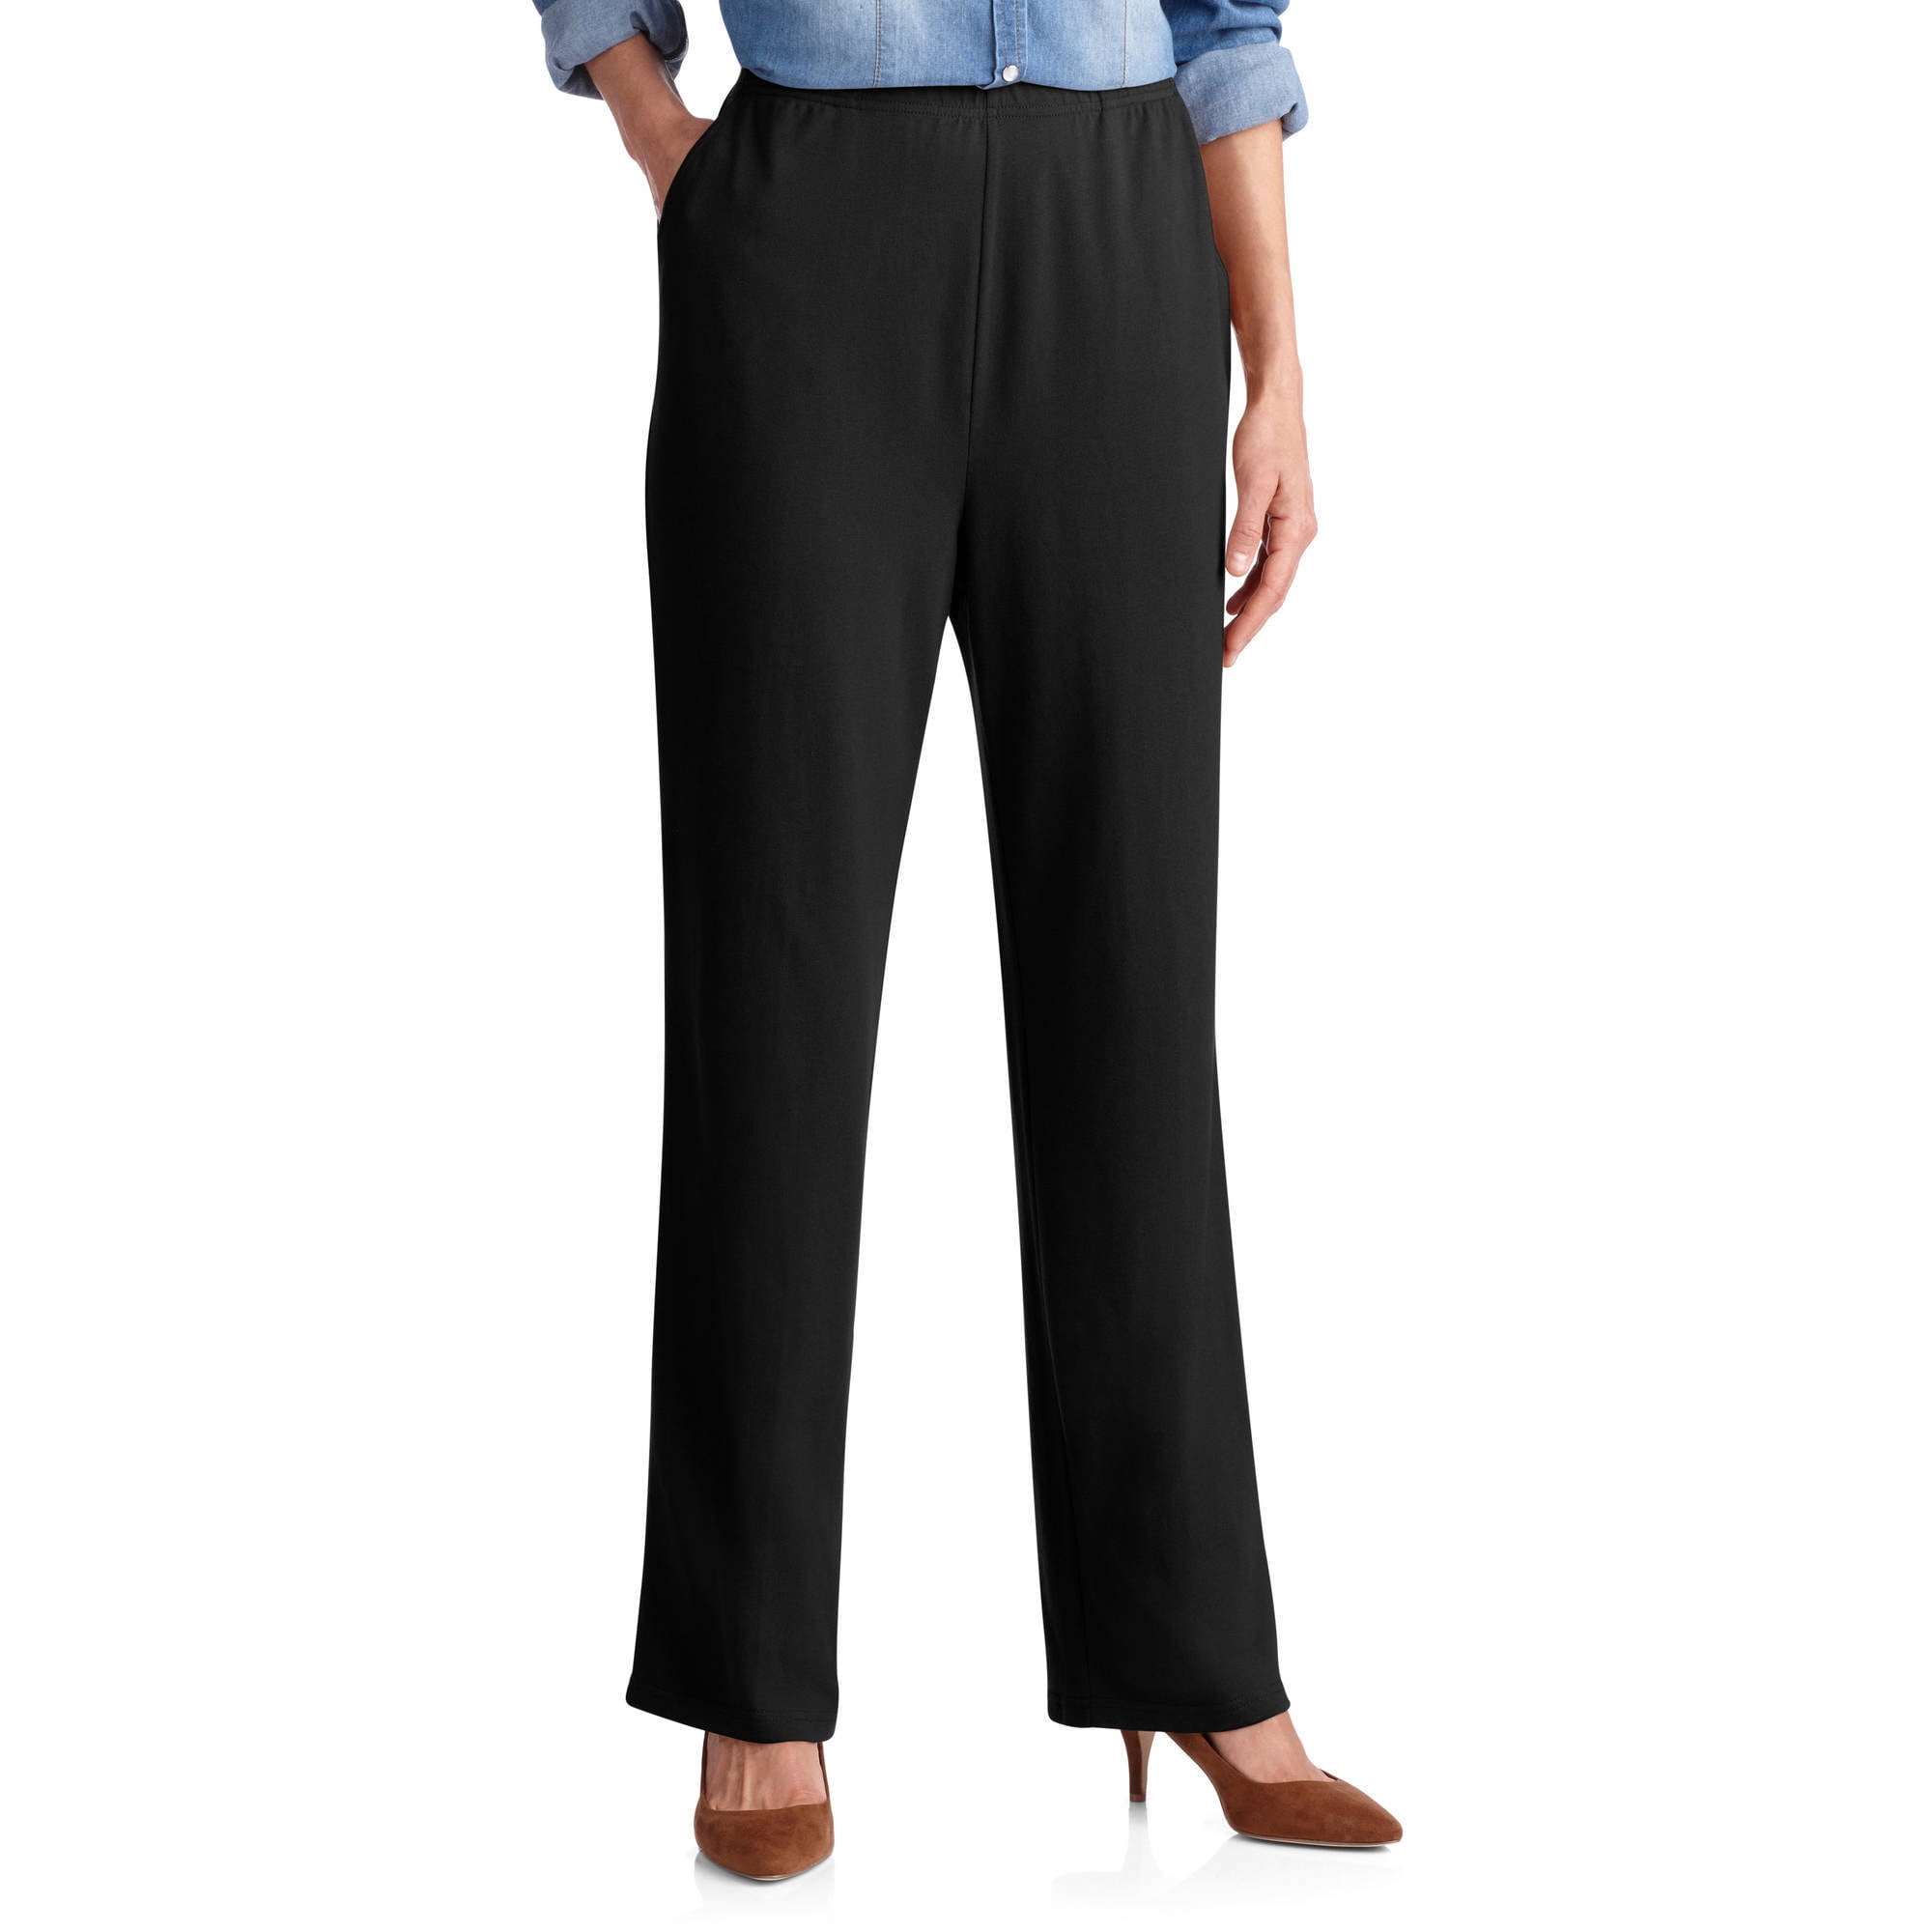 Women's Pants - Walmart.com